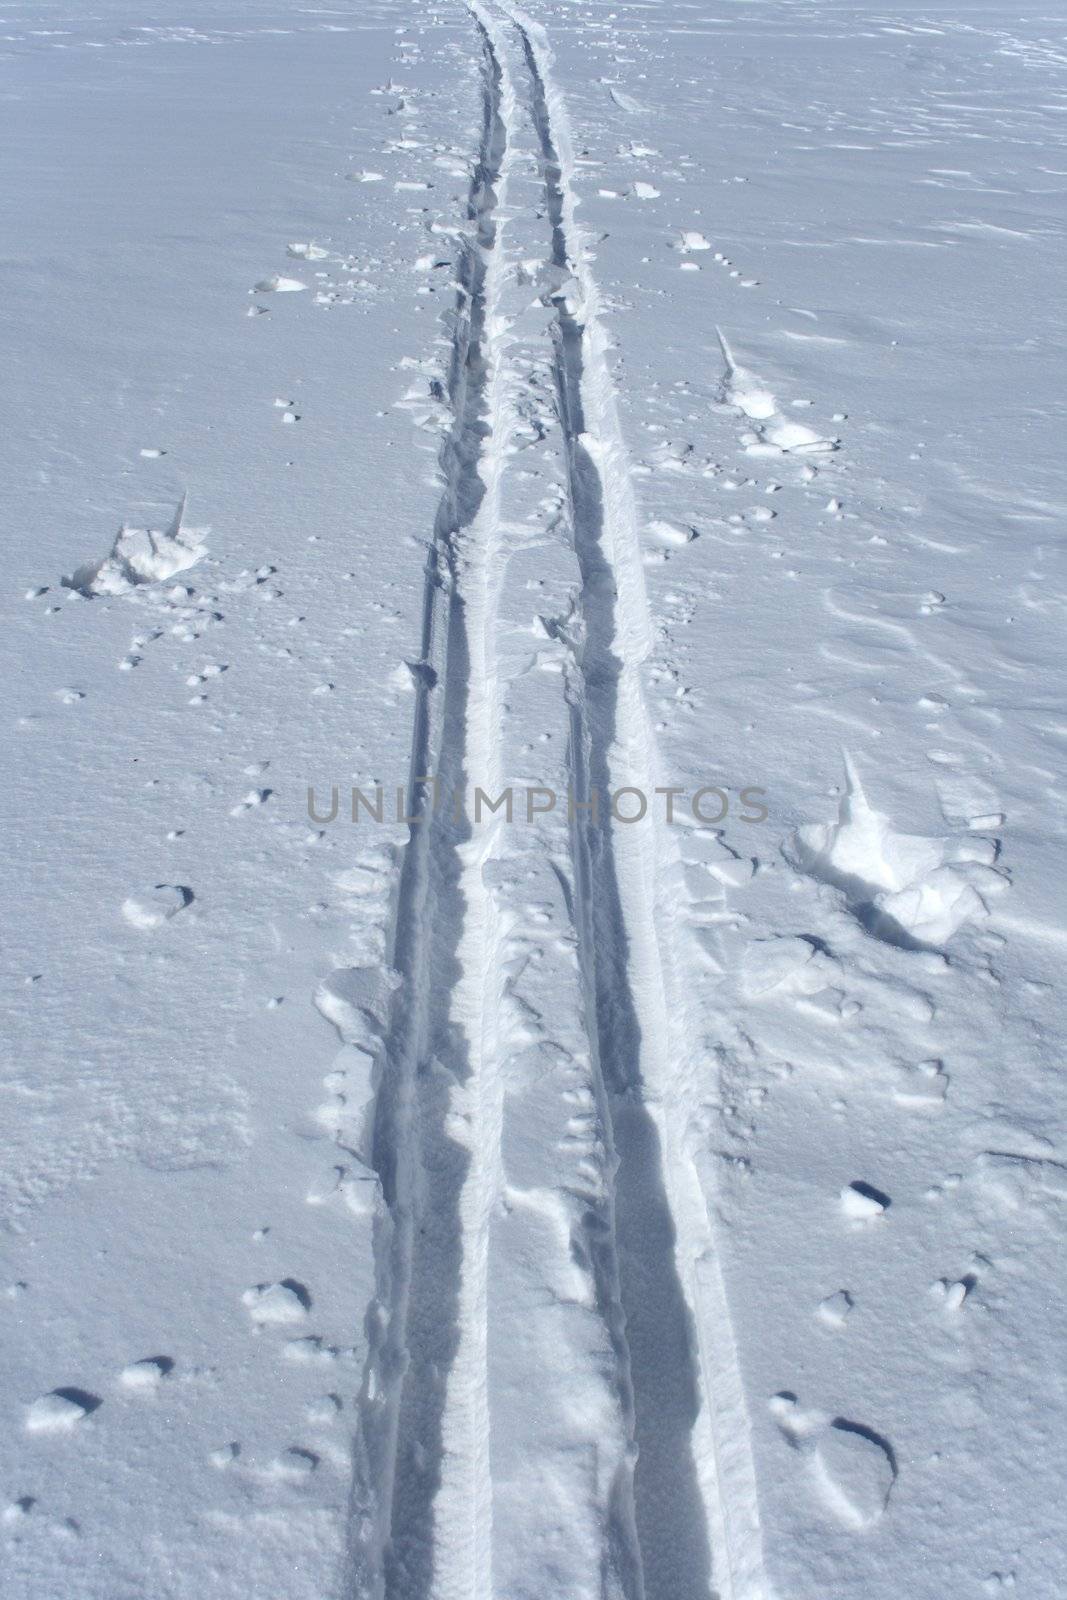 Winter sport. Ski tracks in the snow.